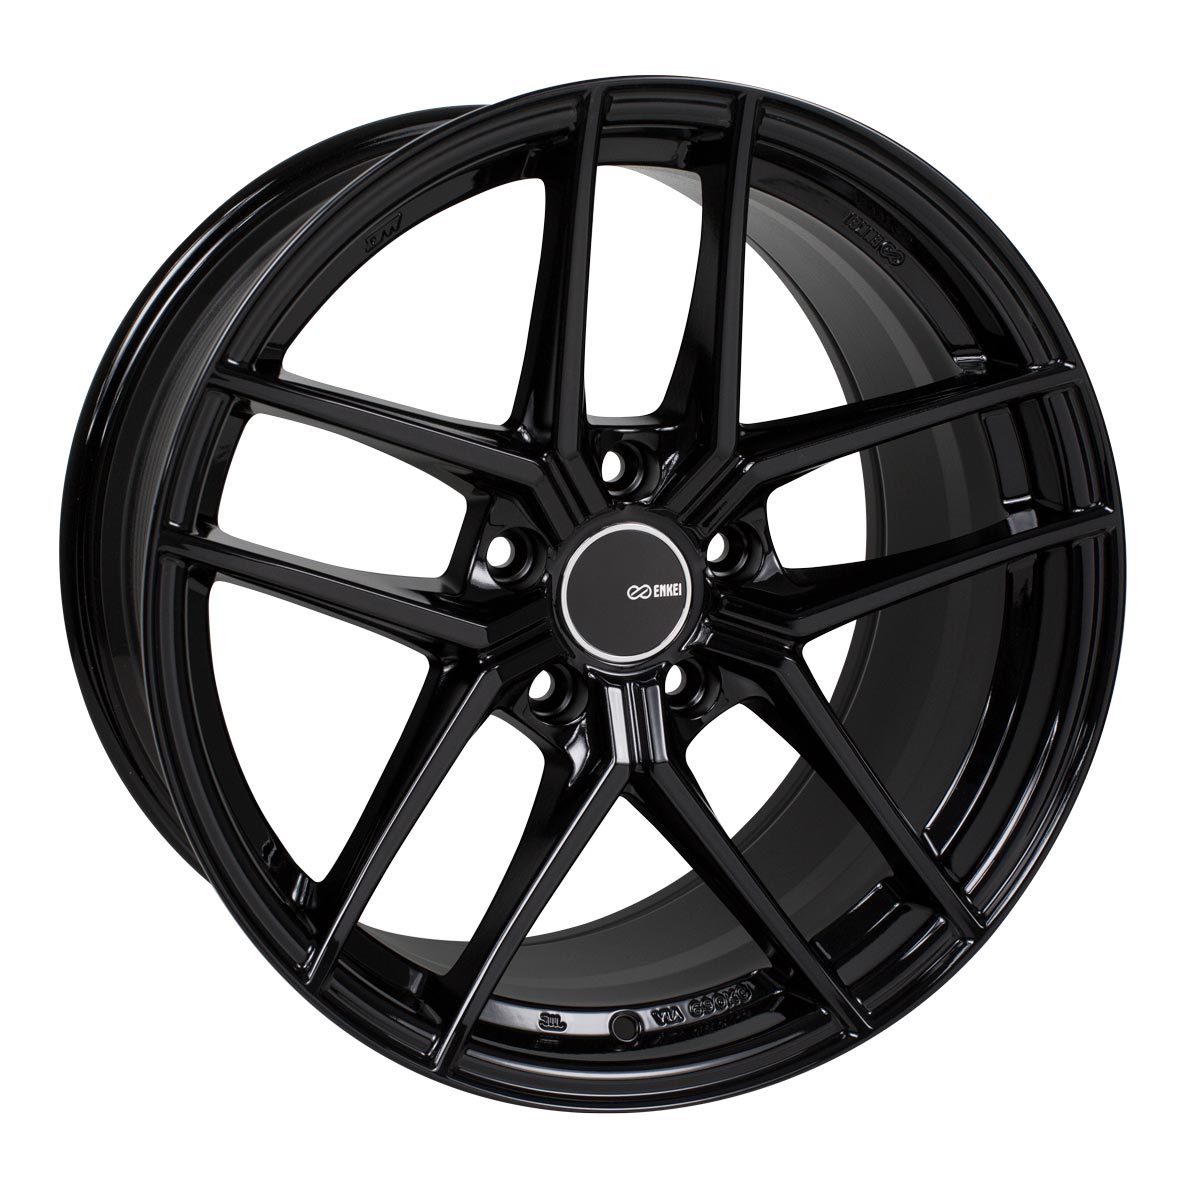 Enkei TY-5 Wheel Gloss Black 18x9.5 +35 5x114.3 498-895-6535BK